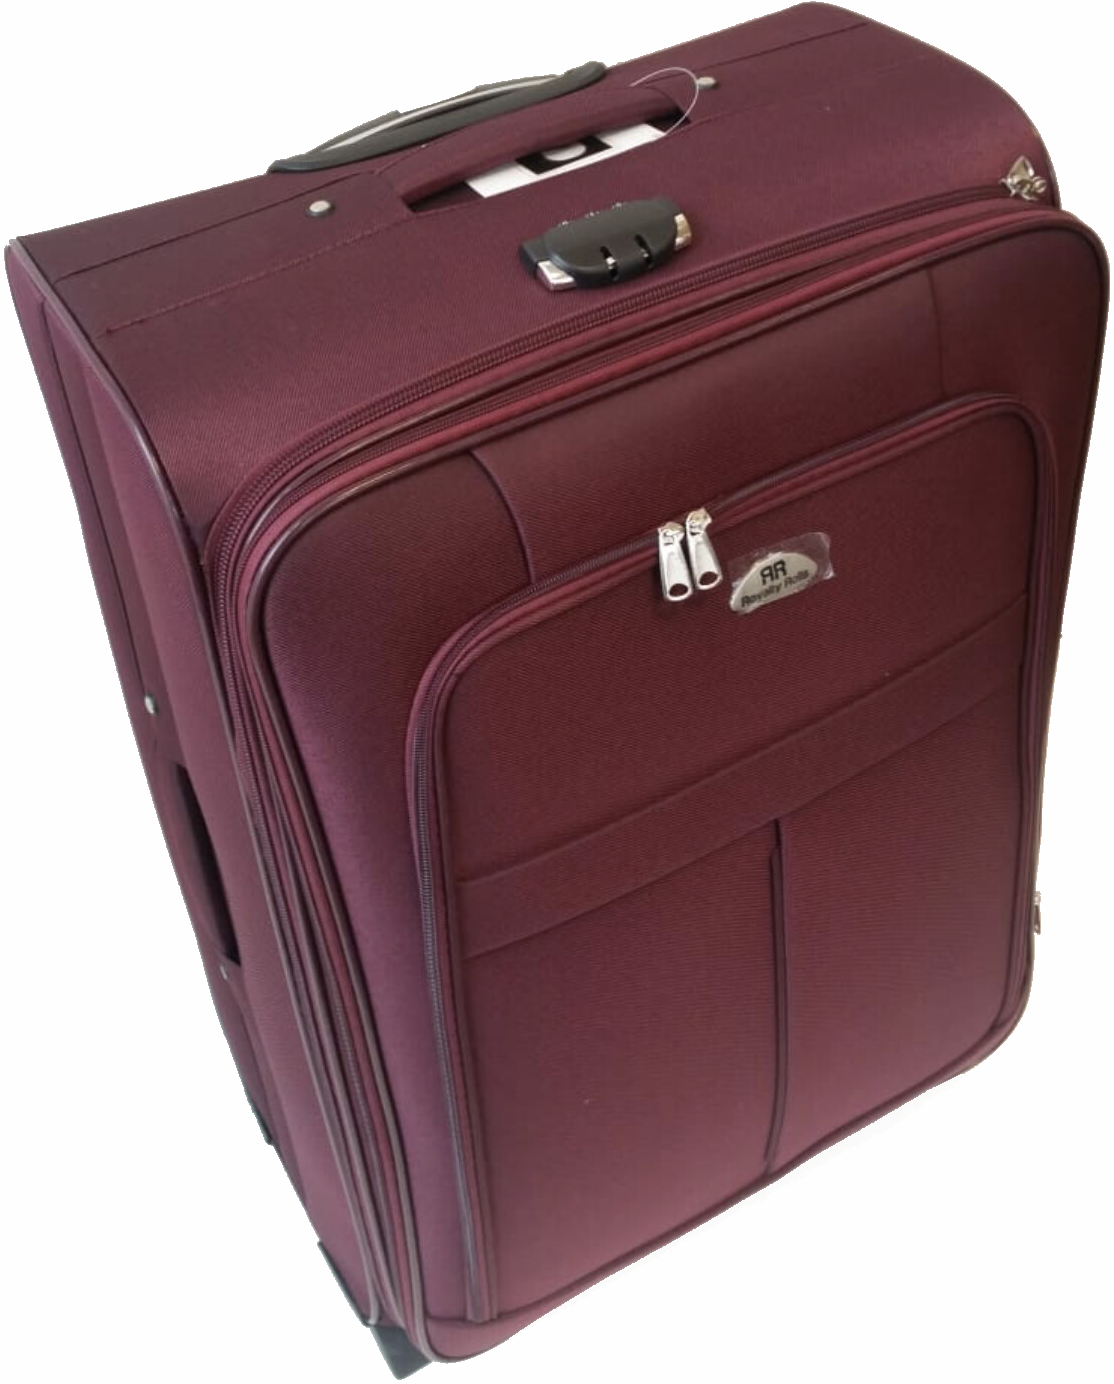 Dubai koffer set, 4 delig, 4 wiel (#629) Wijn rood, 18, 20, 26, 30 inch